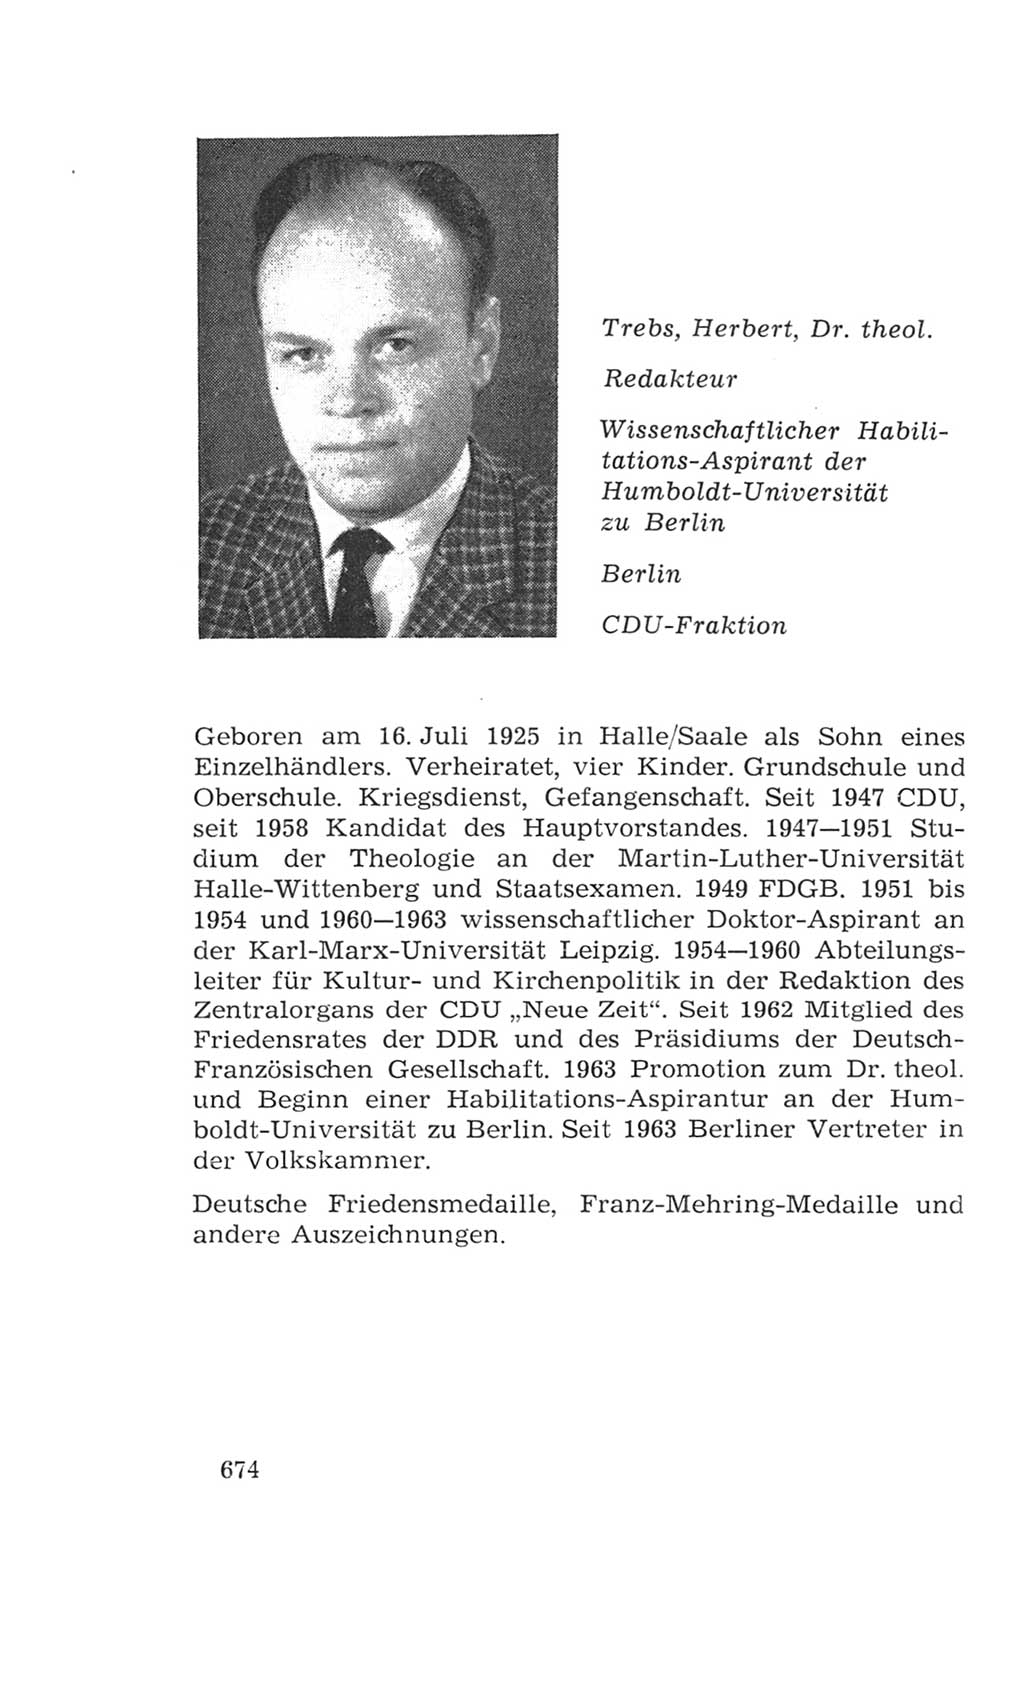 Volkskammer (VK) der Deutschen Demokratischen Republik (DDR), 4. Wahlperiode 1963-1967, Seite 674 (VK. DDR 4. WP. 1963-1967, S. 674)